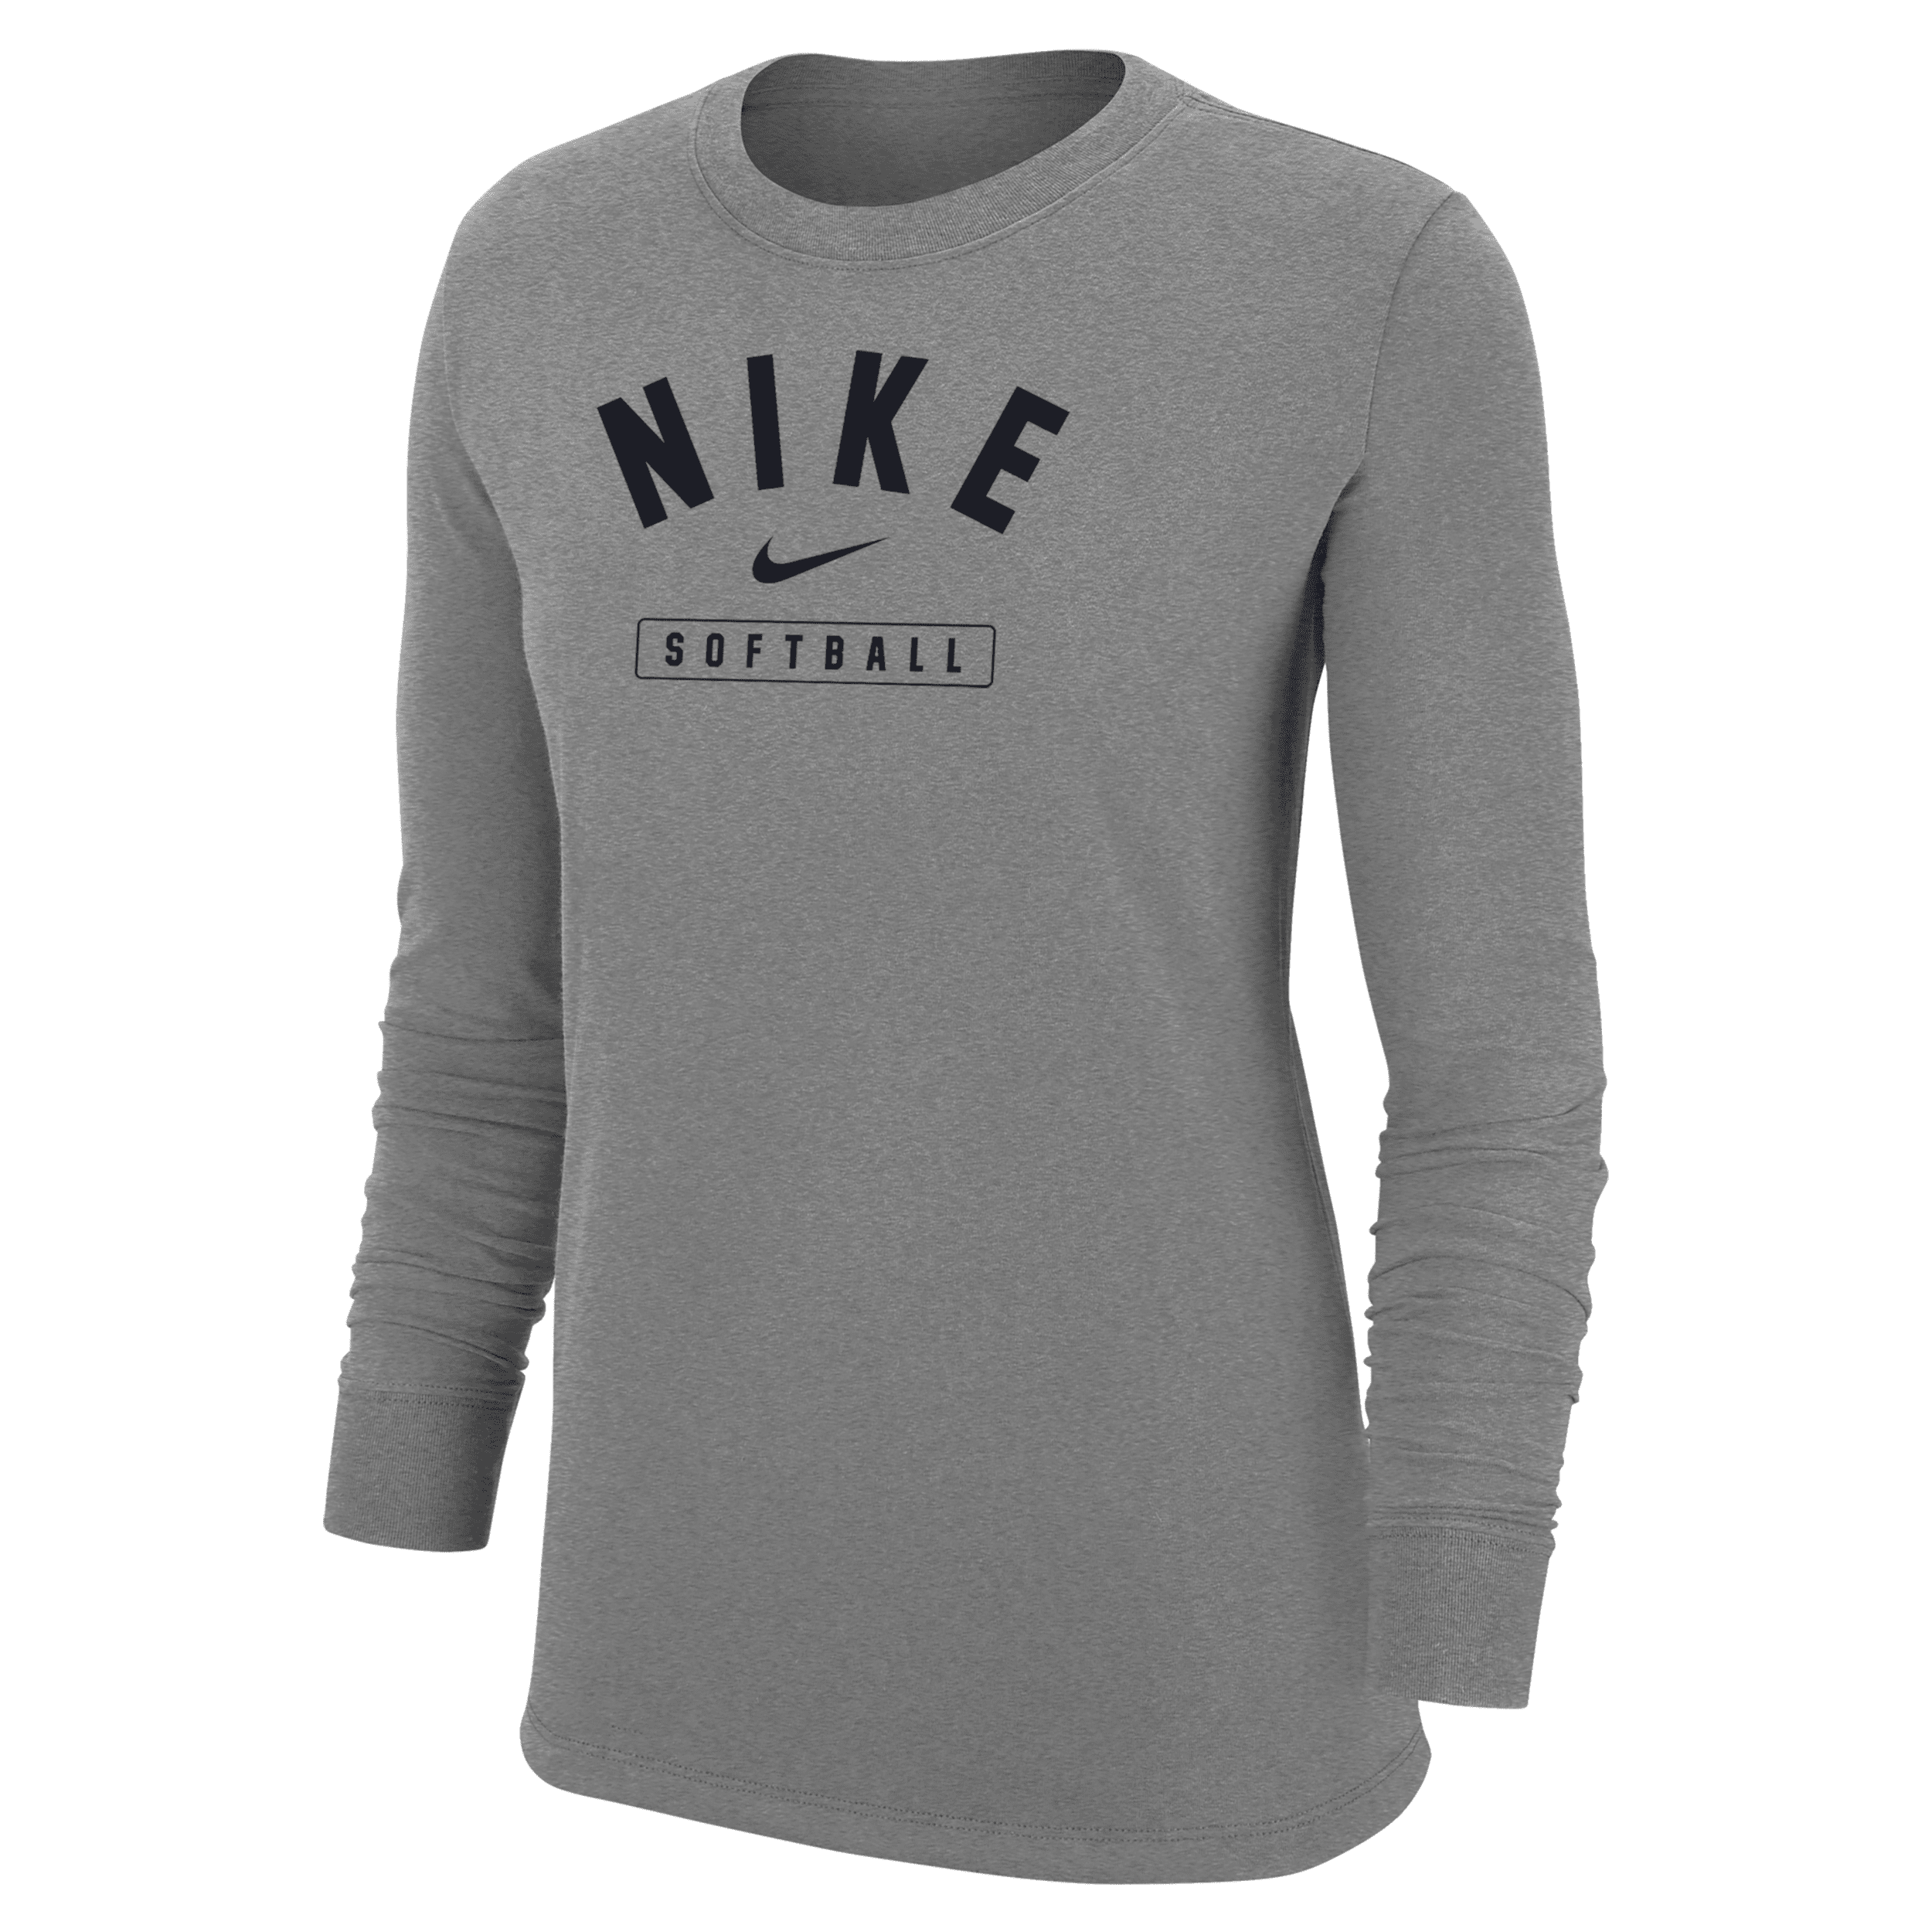 Nike Women's Softball Long-sleeve T-shirt In Grey